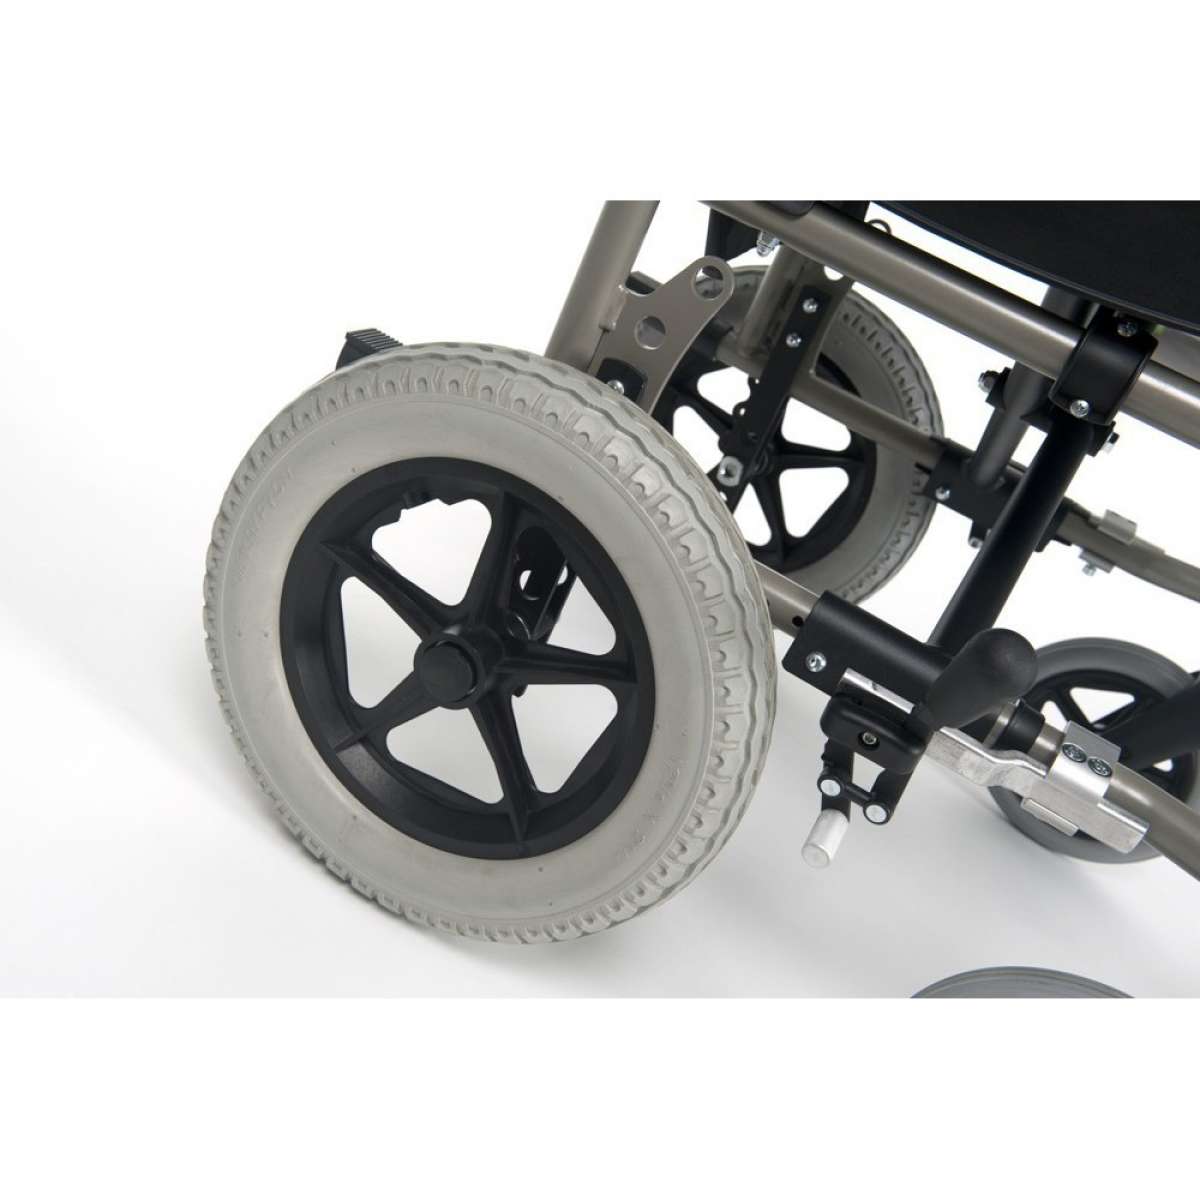 Инвалидное кресло-коляска V100